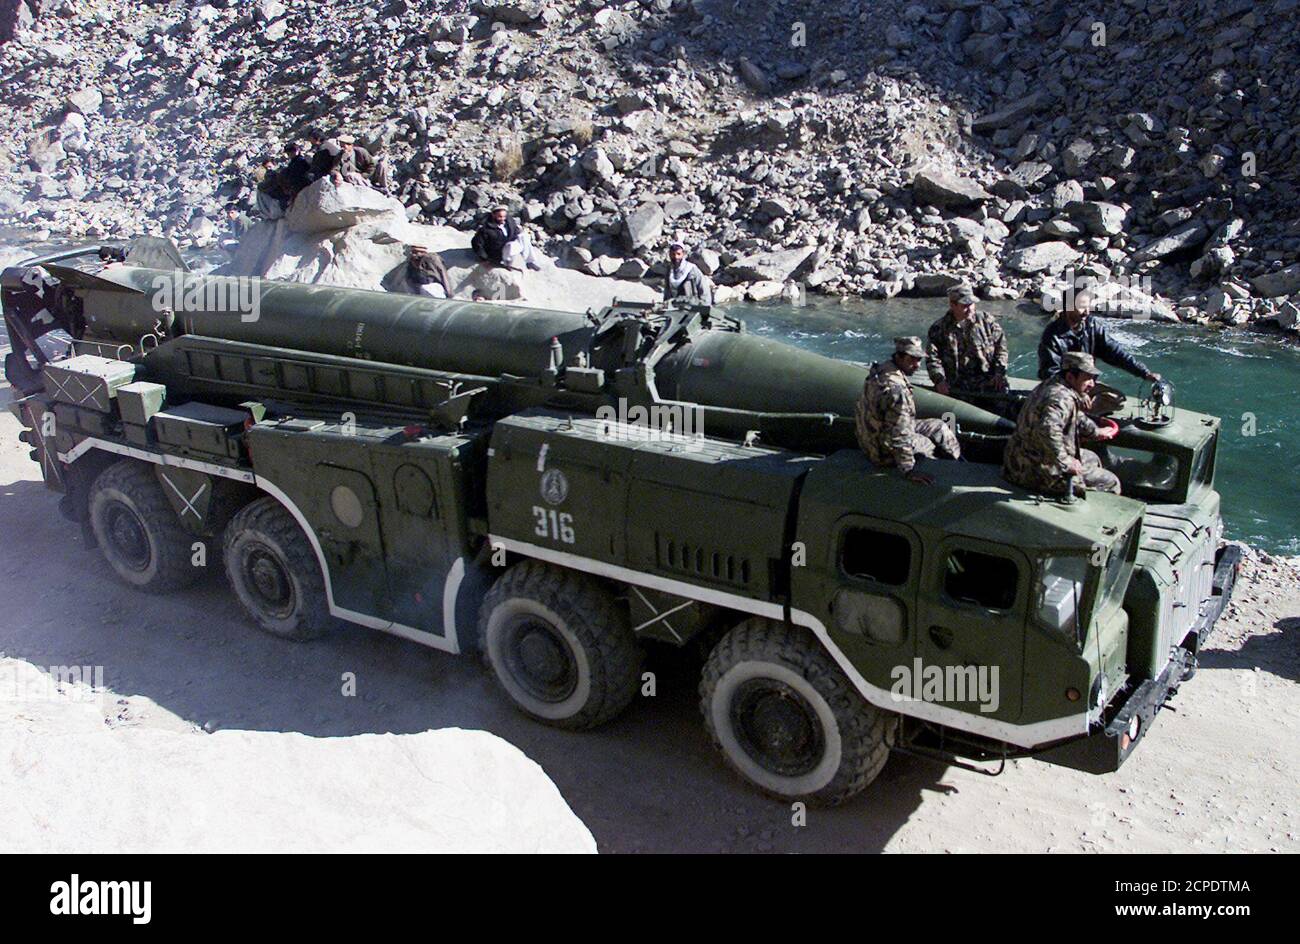 Les troupes du ministère de la Défense afghan conduisent un camion transportant un missile Scud le long d'une route dans la vallée de Panjsher en Afghanistan, le 10 décembre 2003. La faction dominante de Jamiat dans la région a commencé à livrer des armes lourdes dans le cadre d'une initiative de désarmement du gouvernement. REUTERS/Ahmad Masood AM/TW Banque D'Images